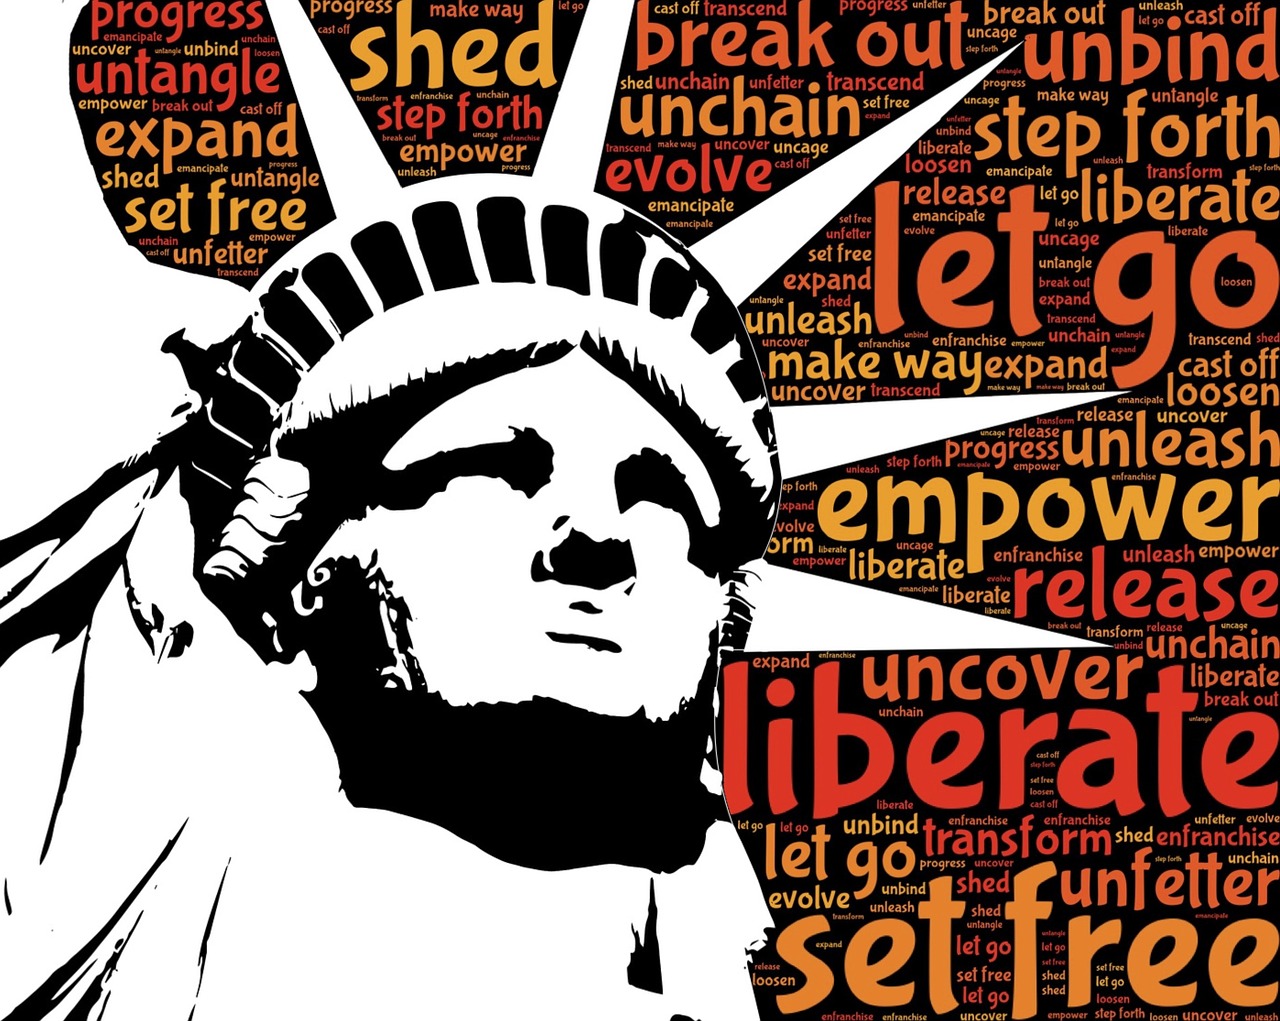 liberty statue liberation free photo